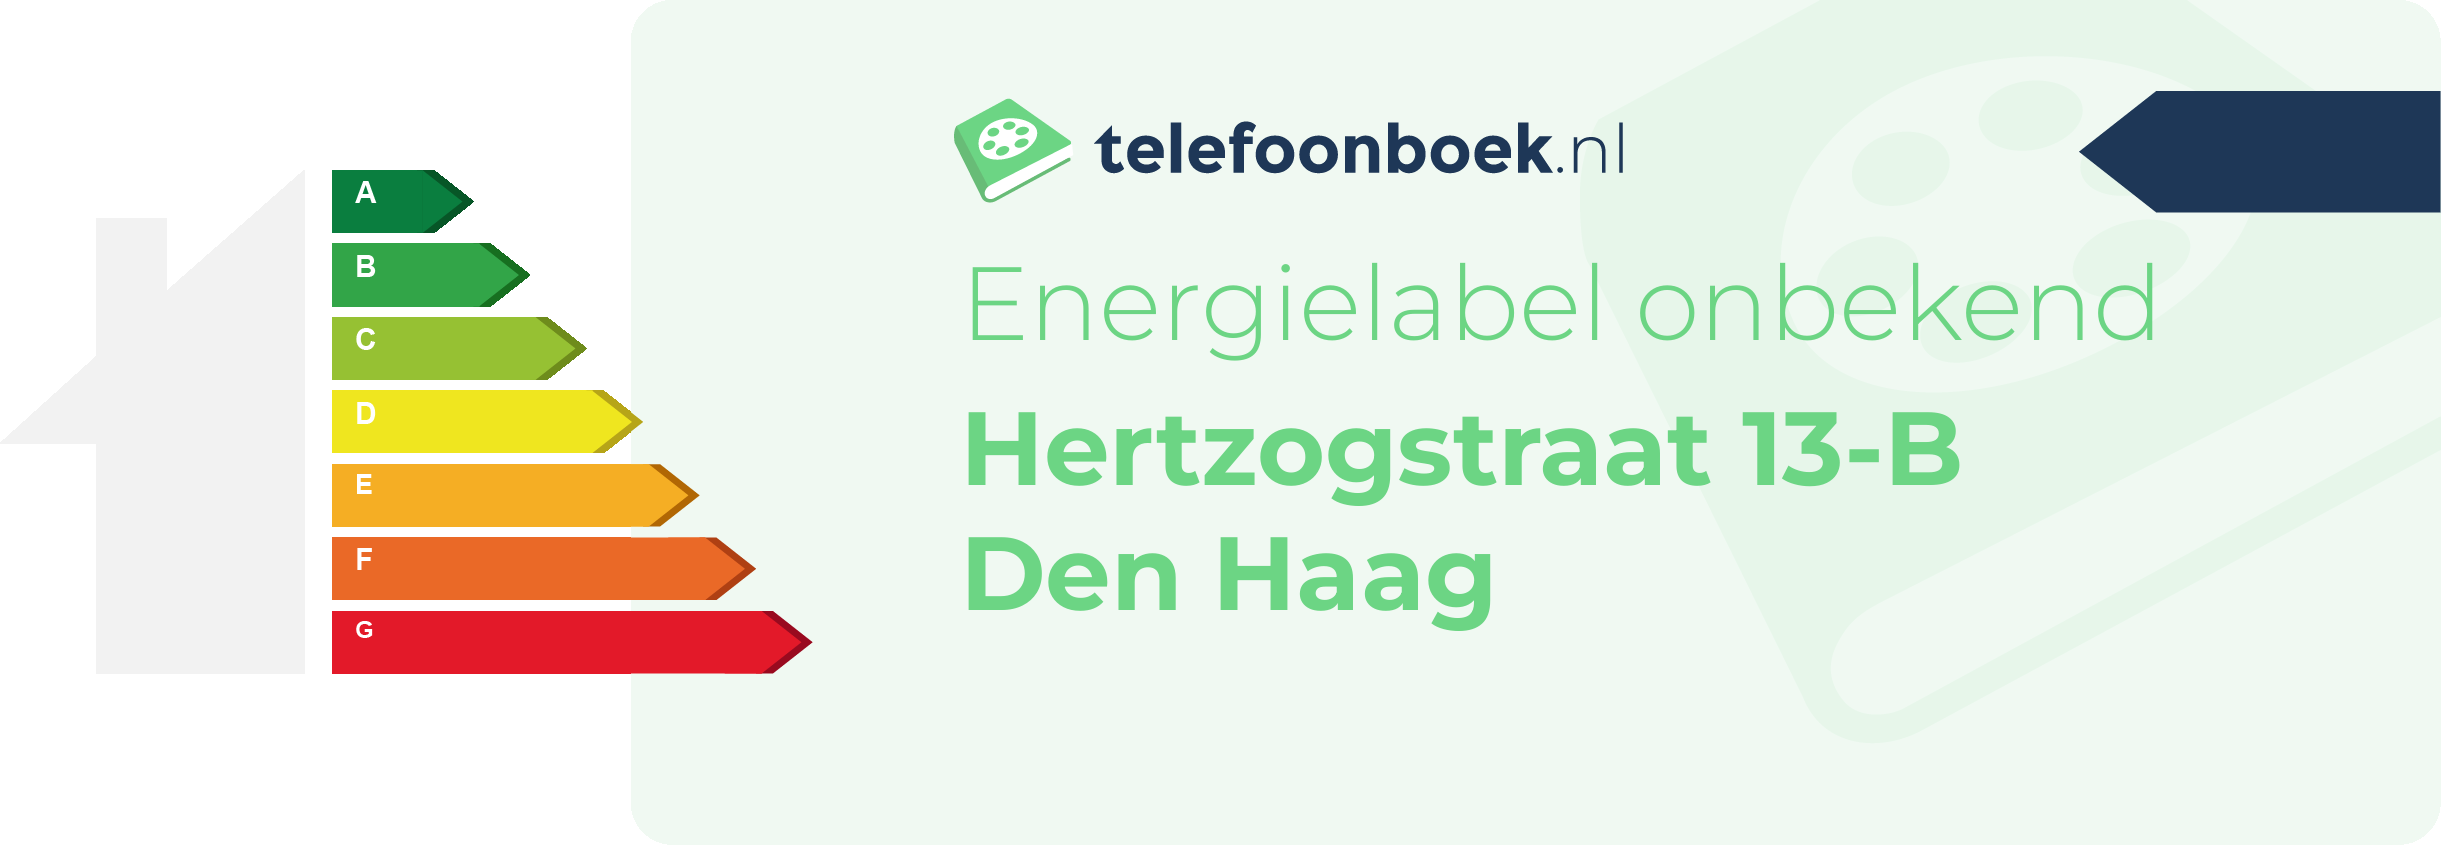 Energielabel Hertzogstraat 13-B Den Haag